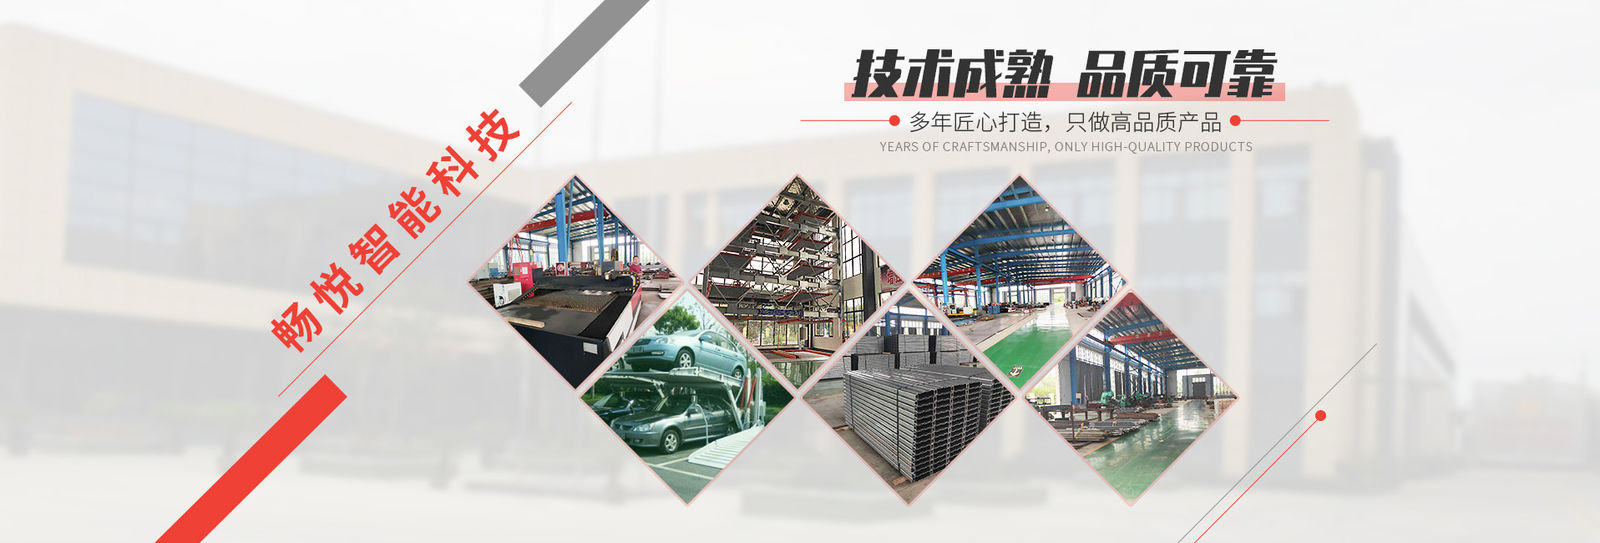 Chine Shanghai Changyue Automation Machinery Co., Ltd. Profil de la société